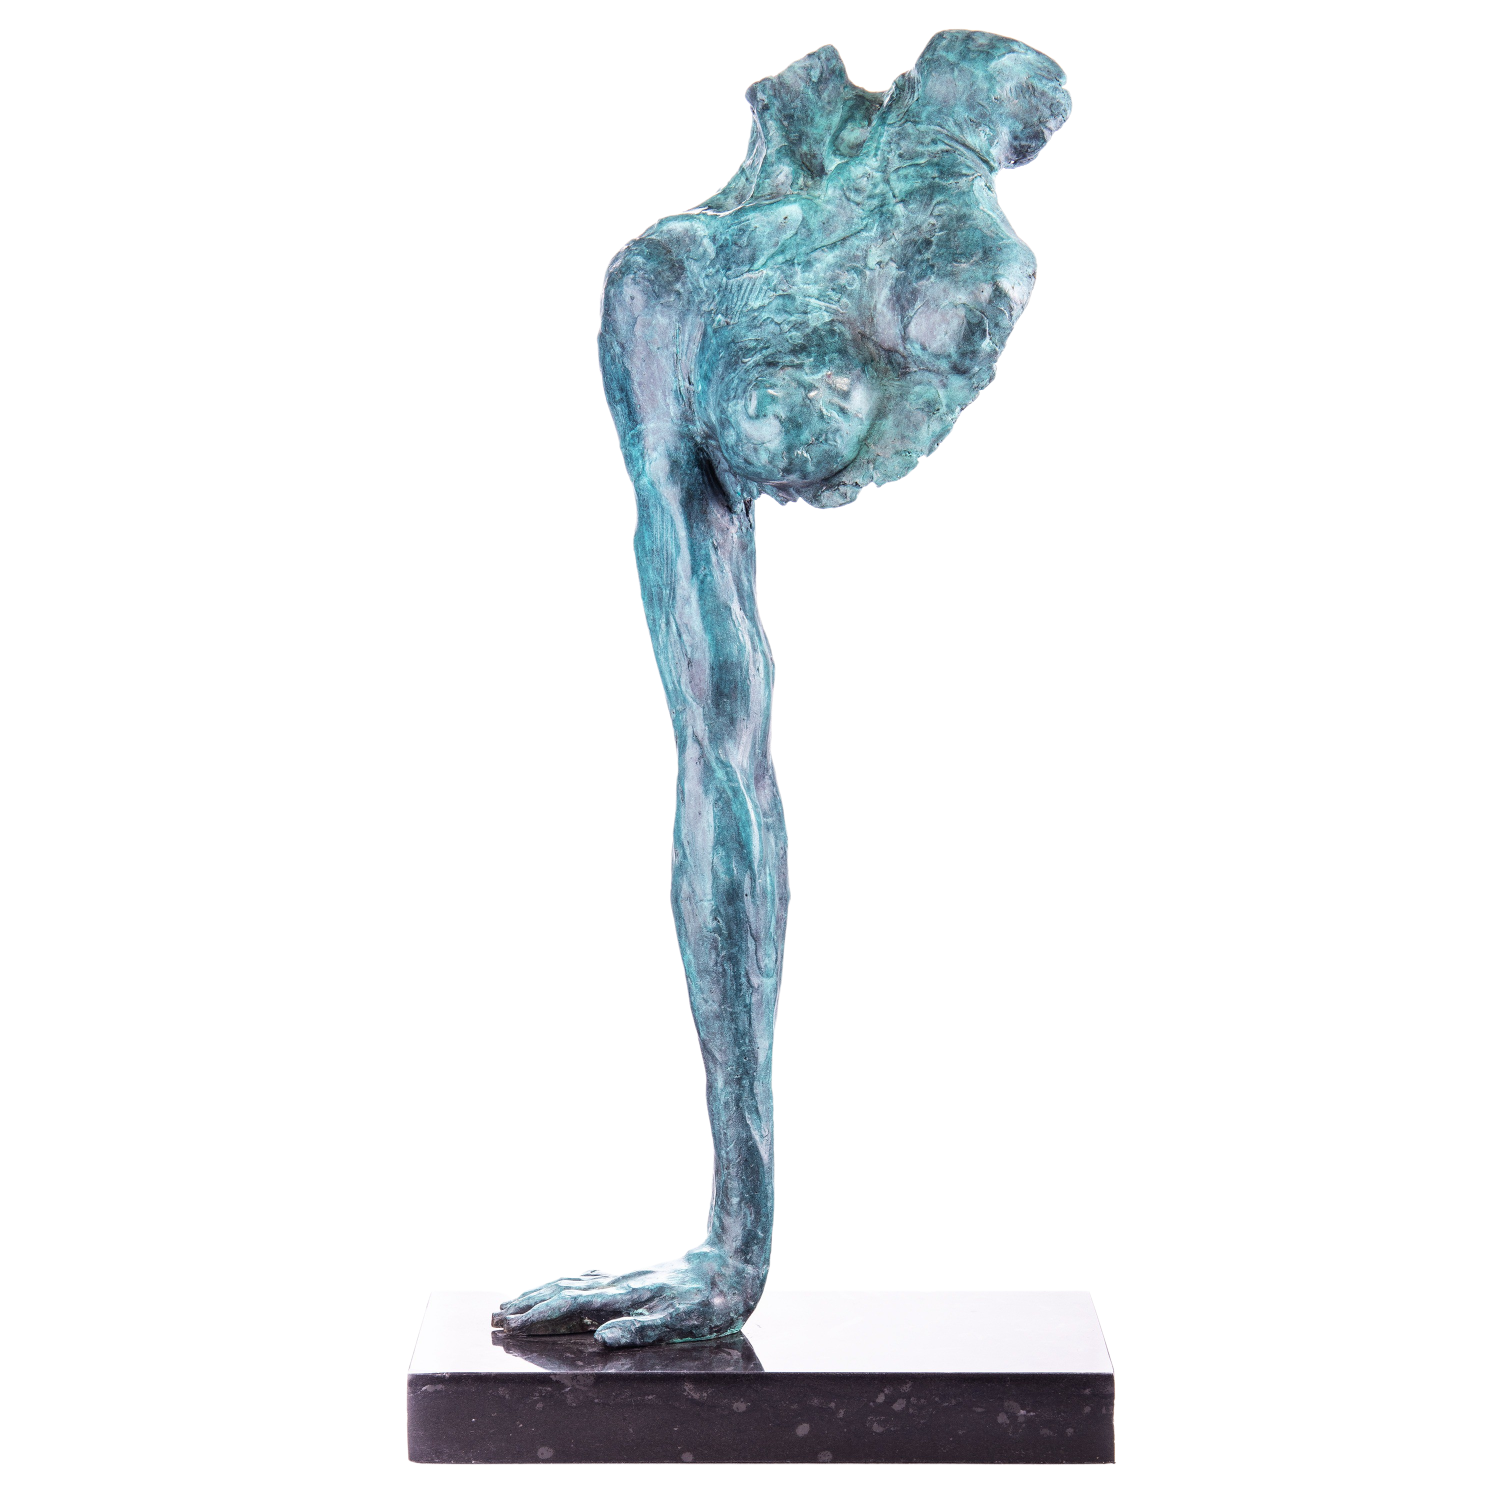 Bronzen "Strength in Art" te koop @ Betaalbarekunst.nl. Dit stukje kunst van brons is een echte verrijking voor je